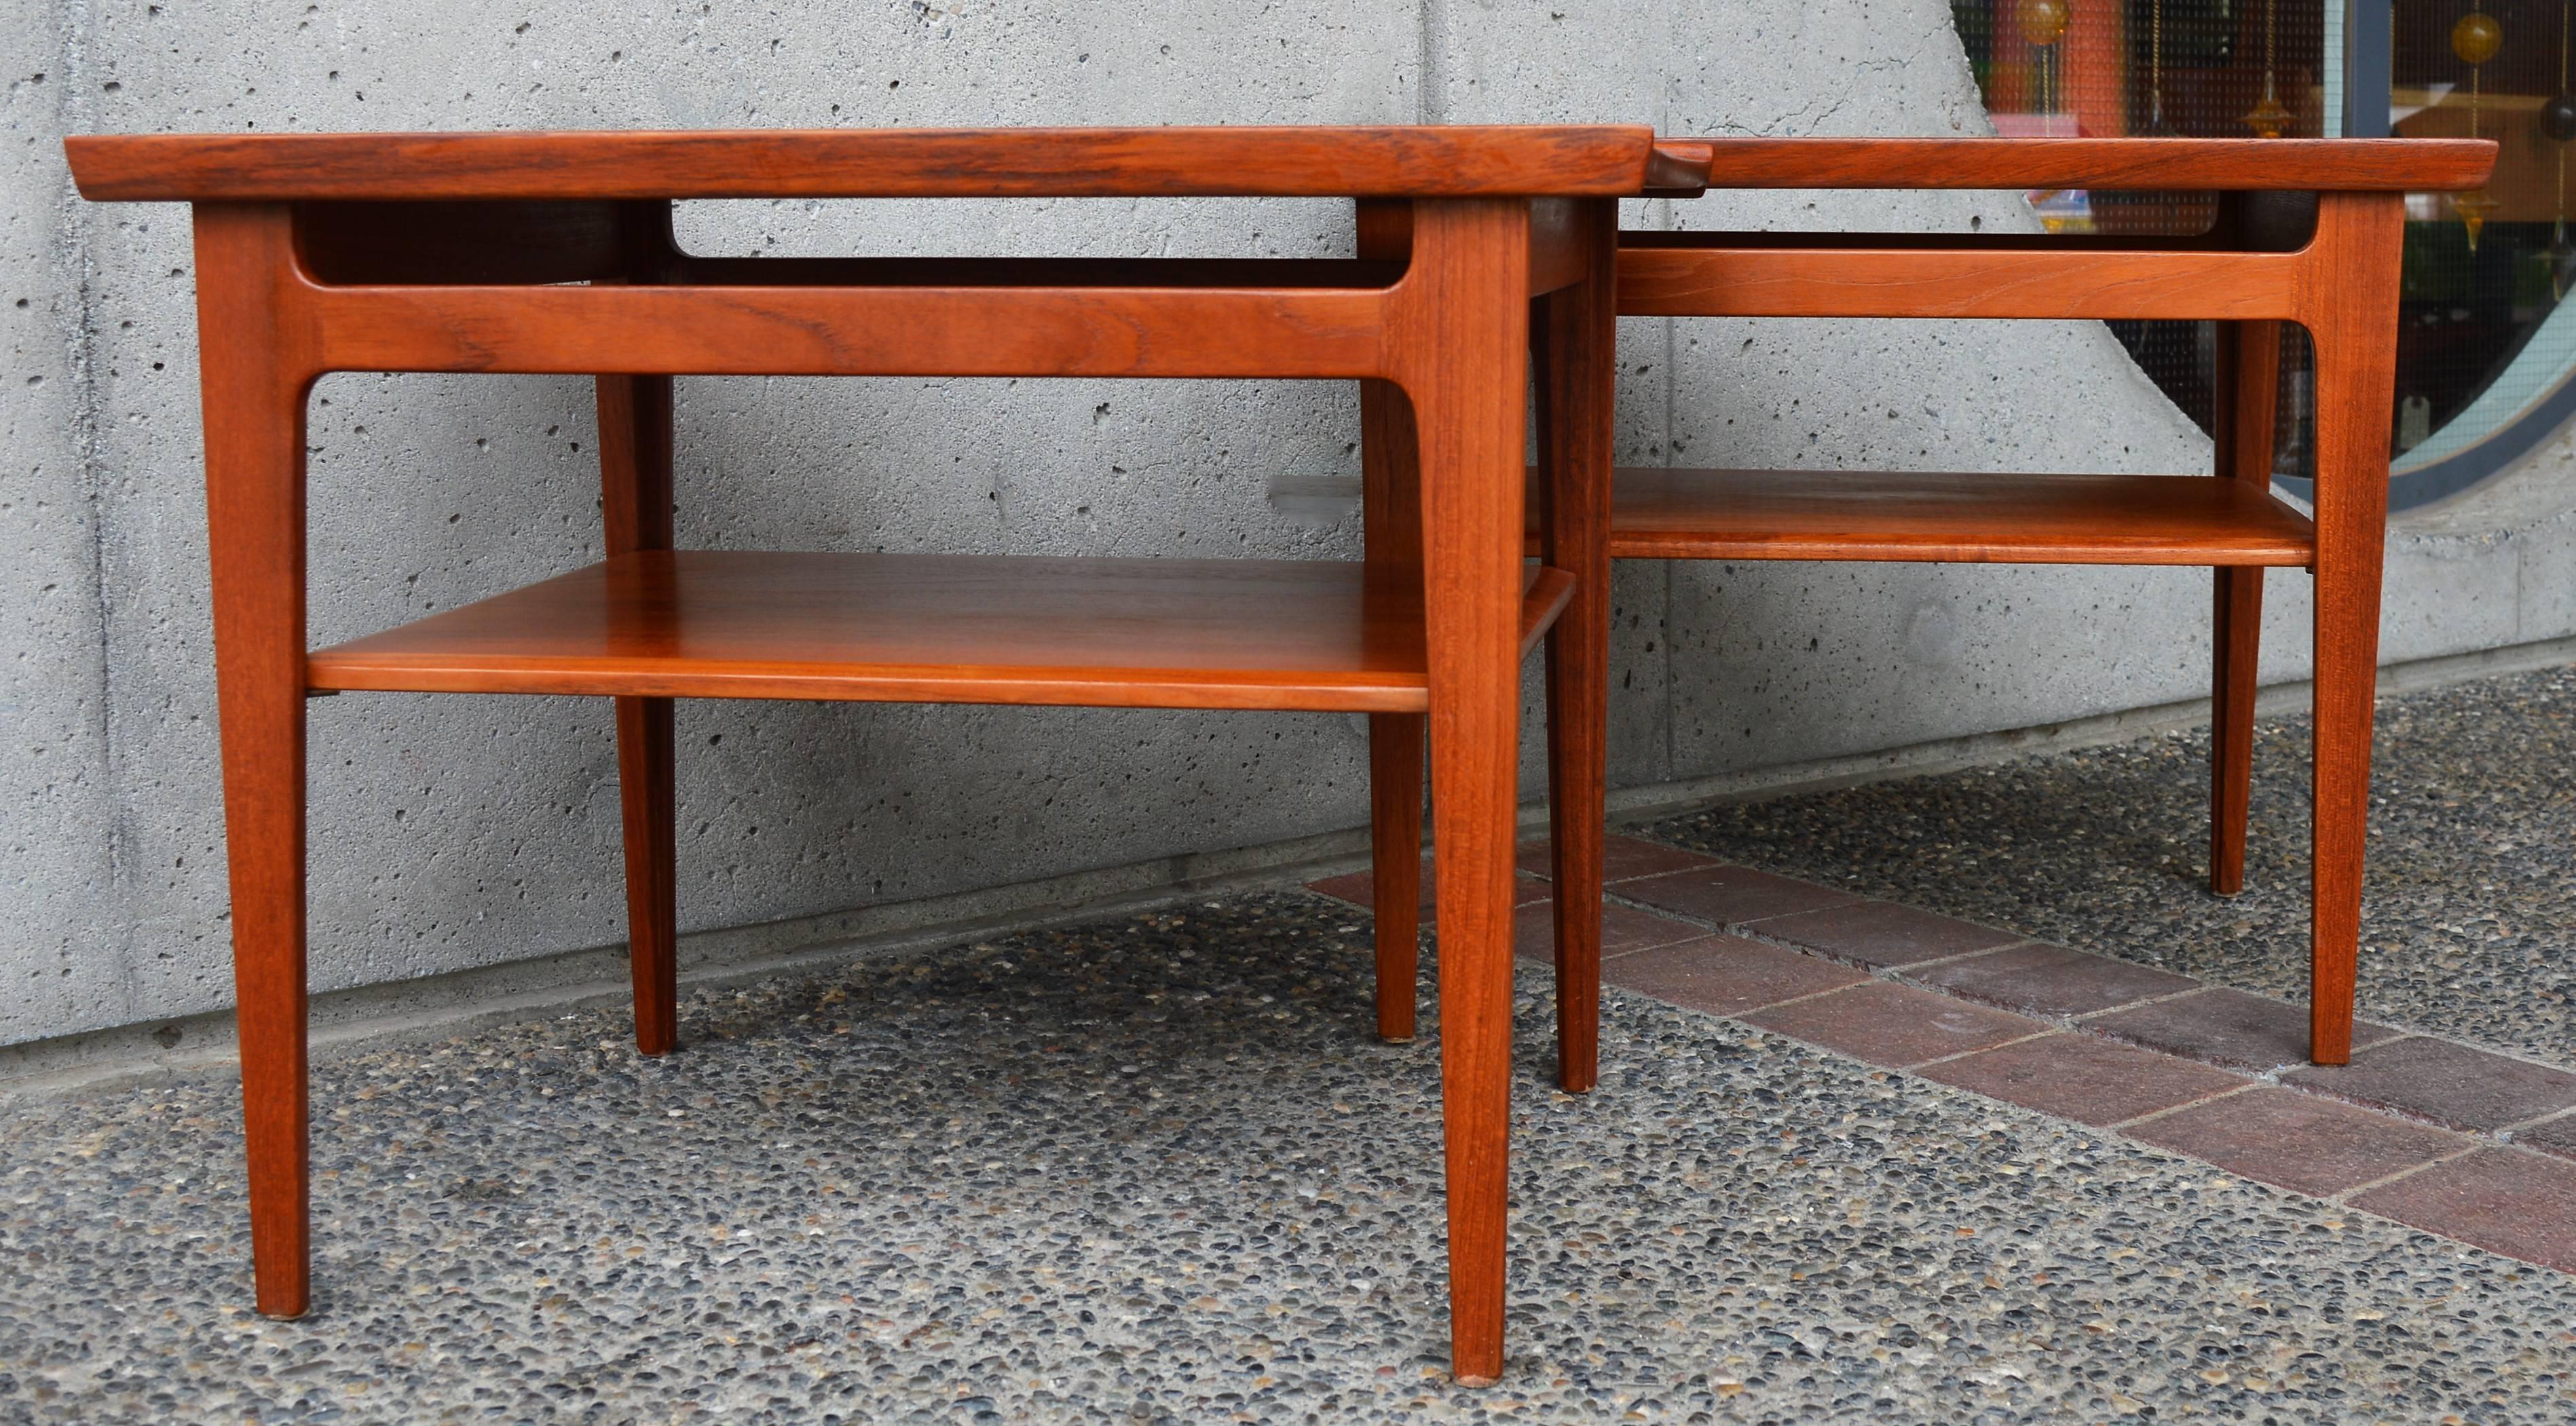 Pair of Finn Juhl Solid Teak Side Tables with Shelves Model 535 for France & Son 2